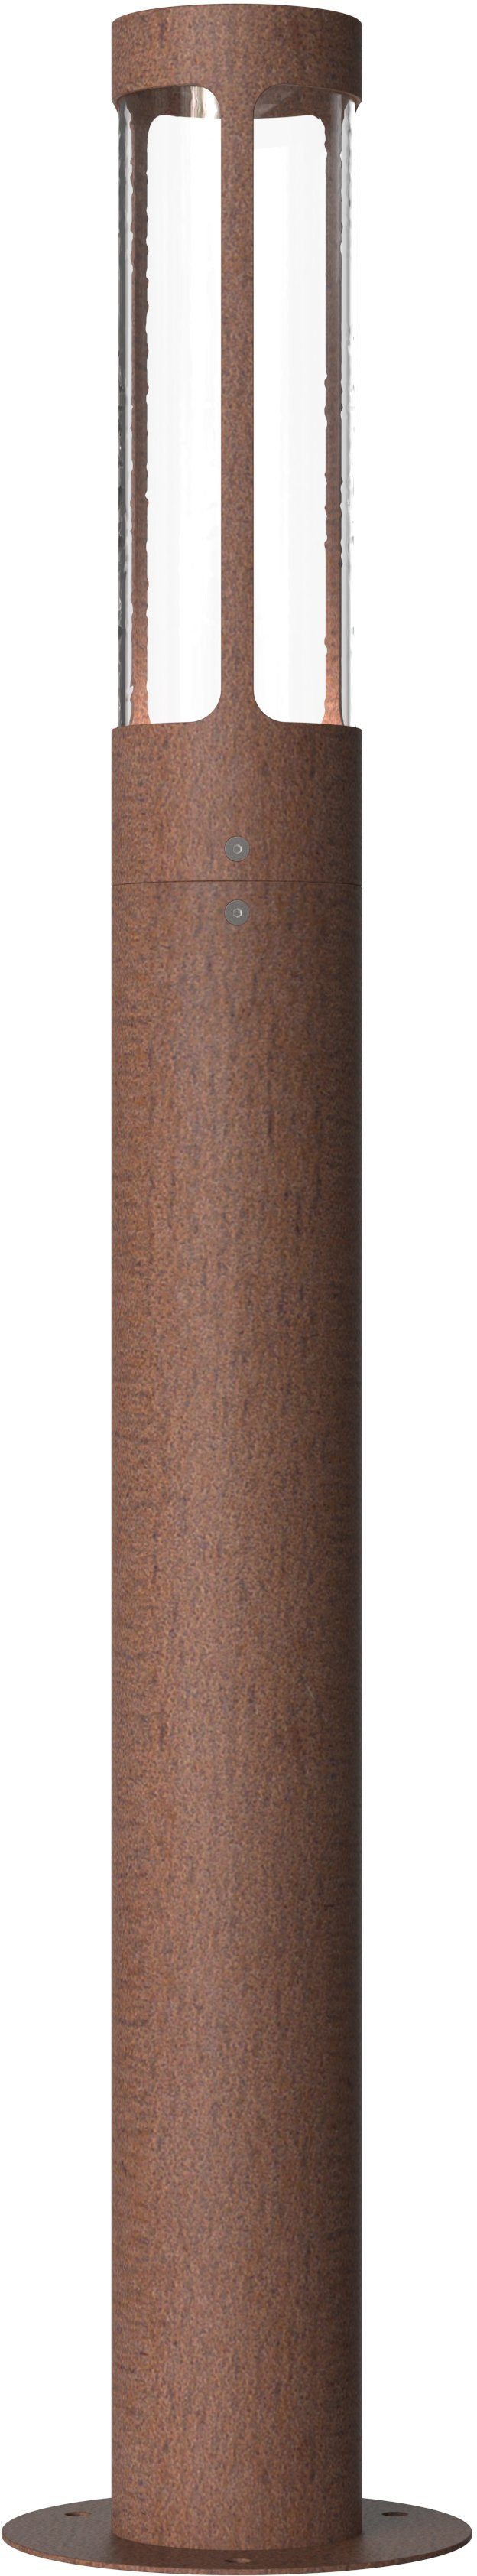 nordlux tuinlamp helix cortenstaal, ip 44 bruin